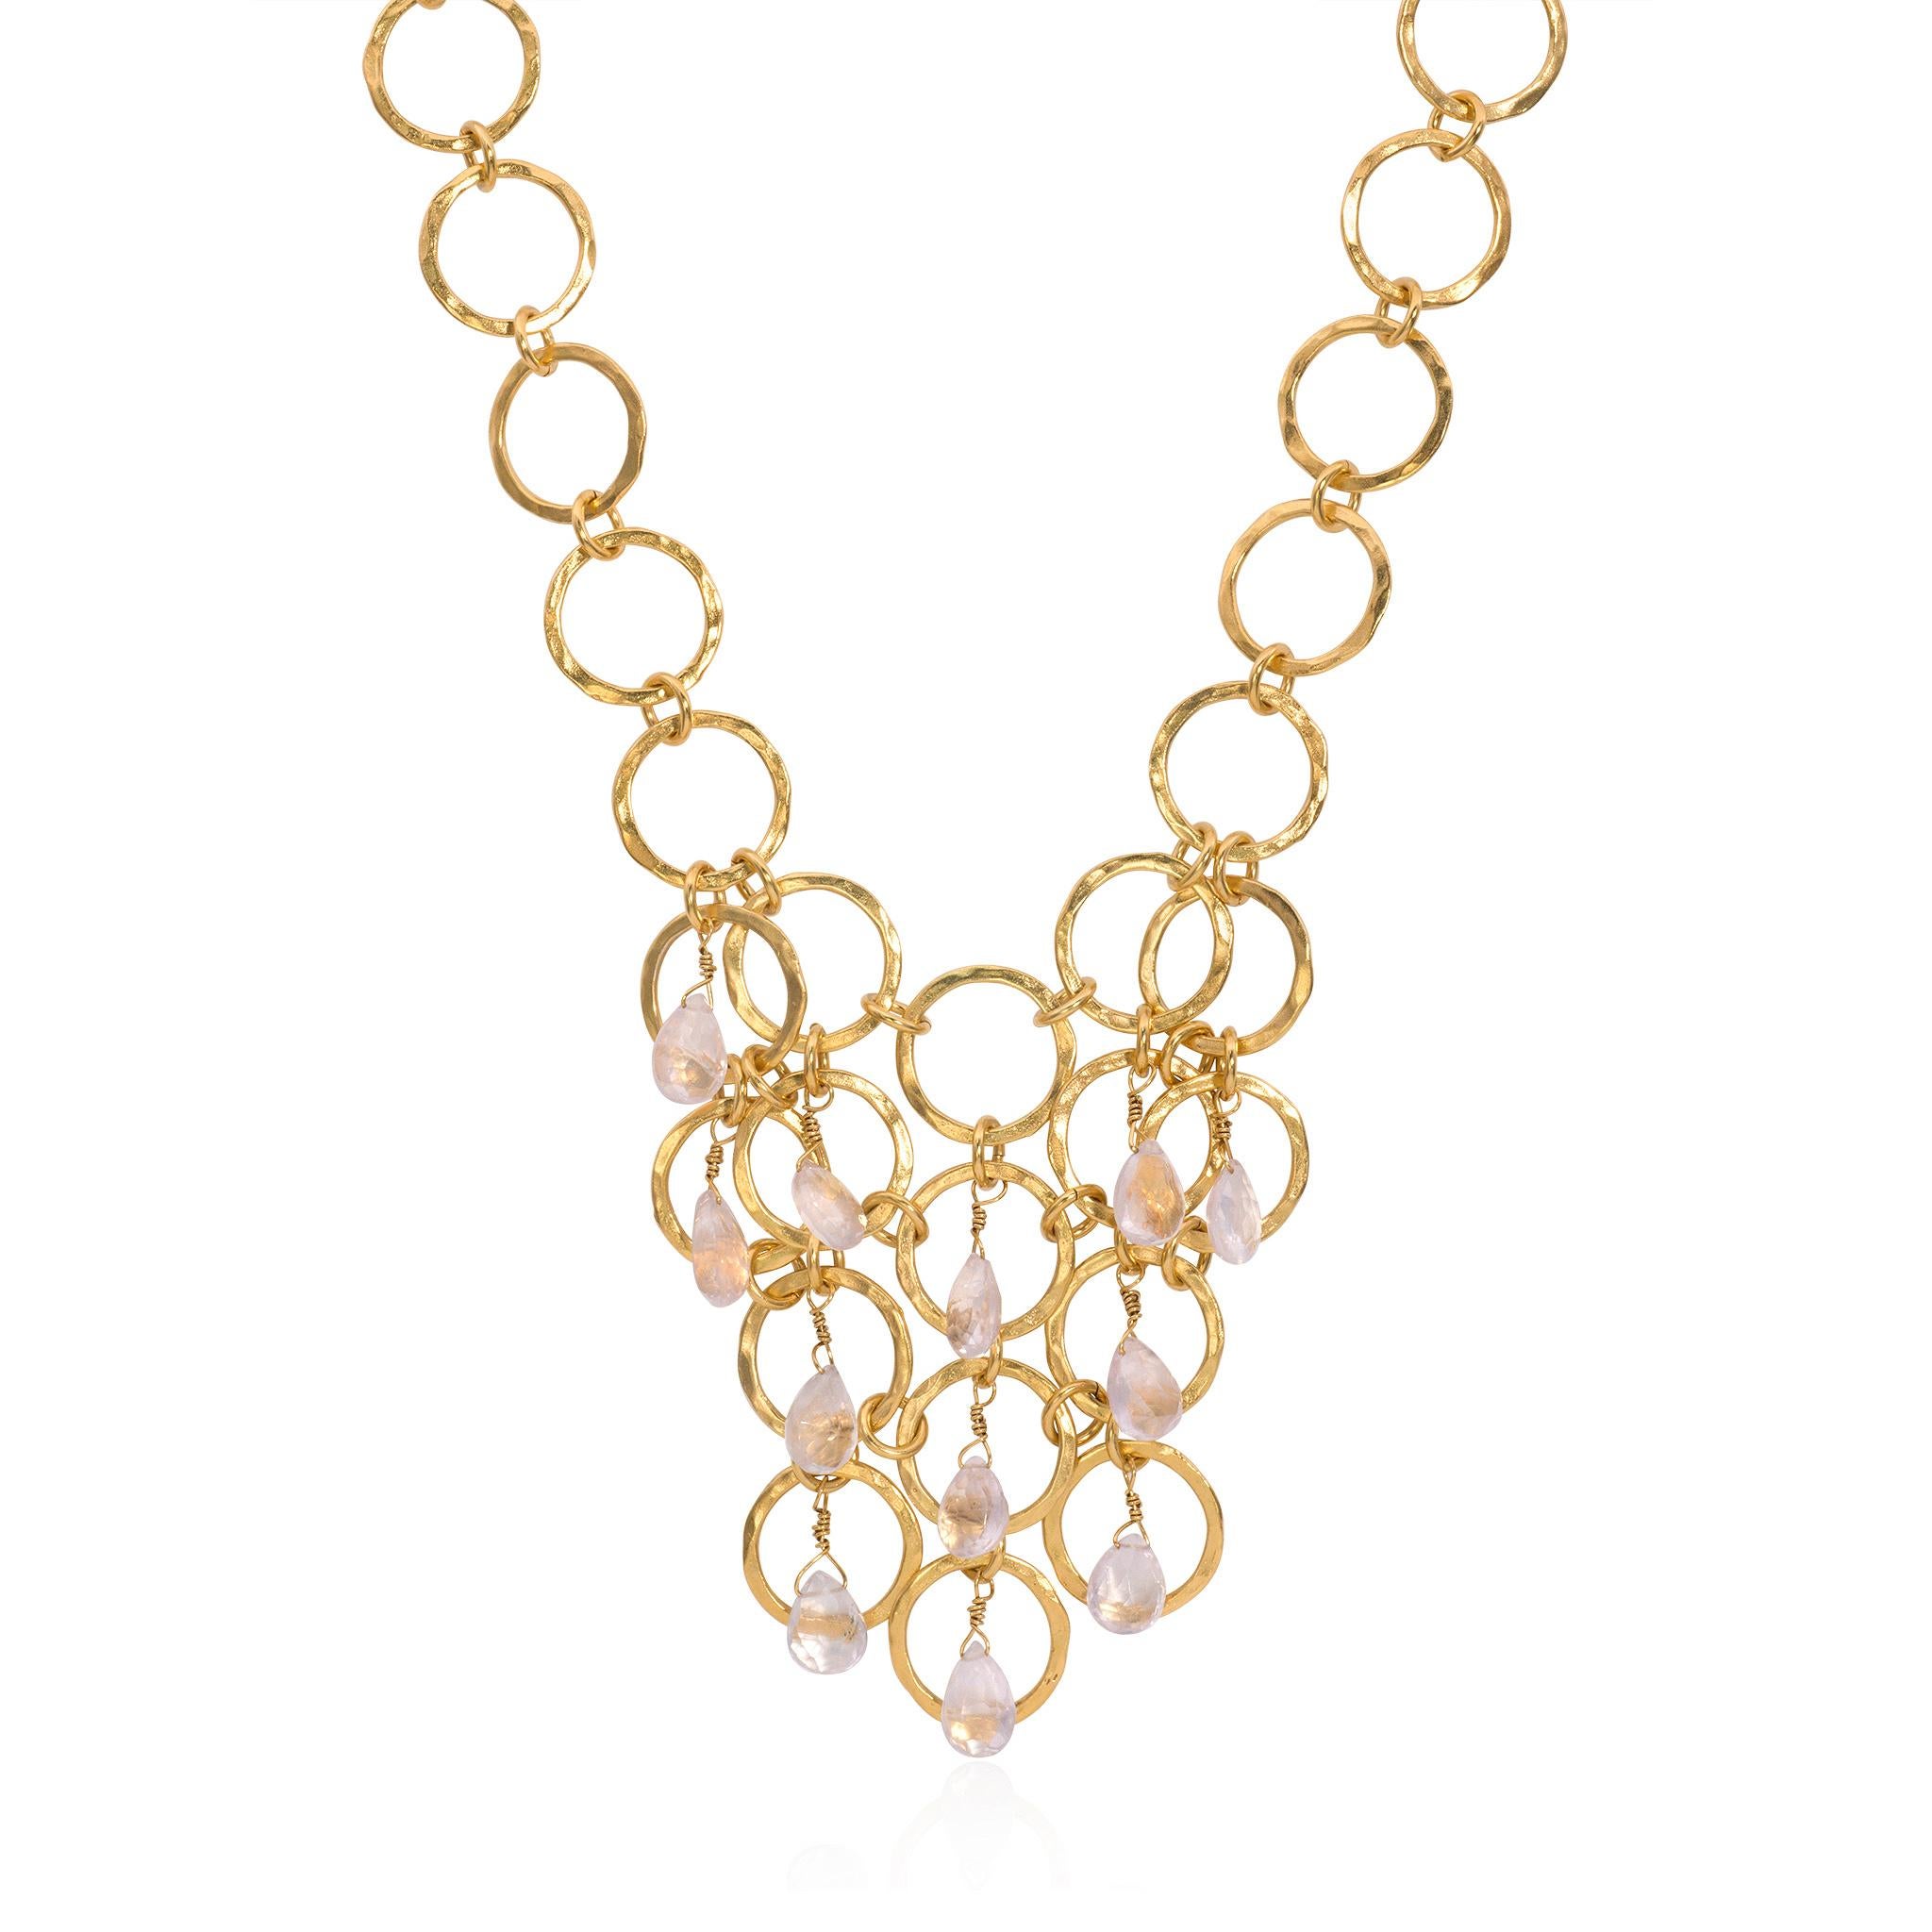 Gold Vermeil Multi Hoop Bib Halskette mit 13 Peridot Steinen. Das 18-karätige Gold wird über gehämmertes Sterlingsilber geschichtet.